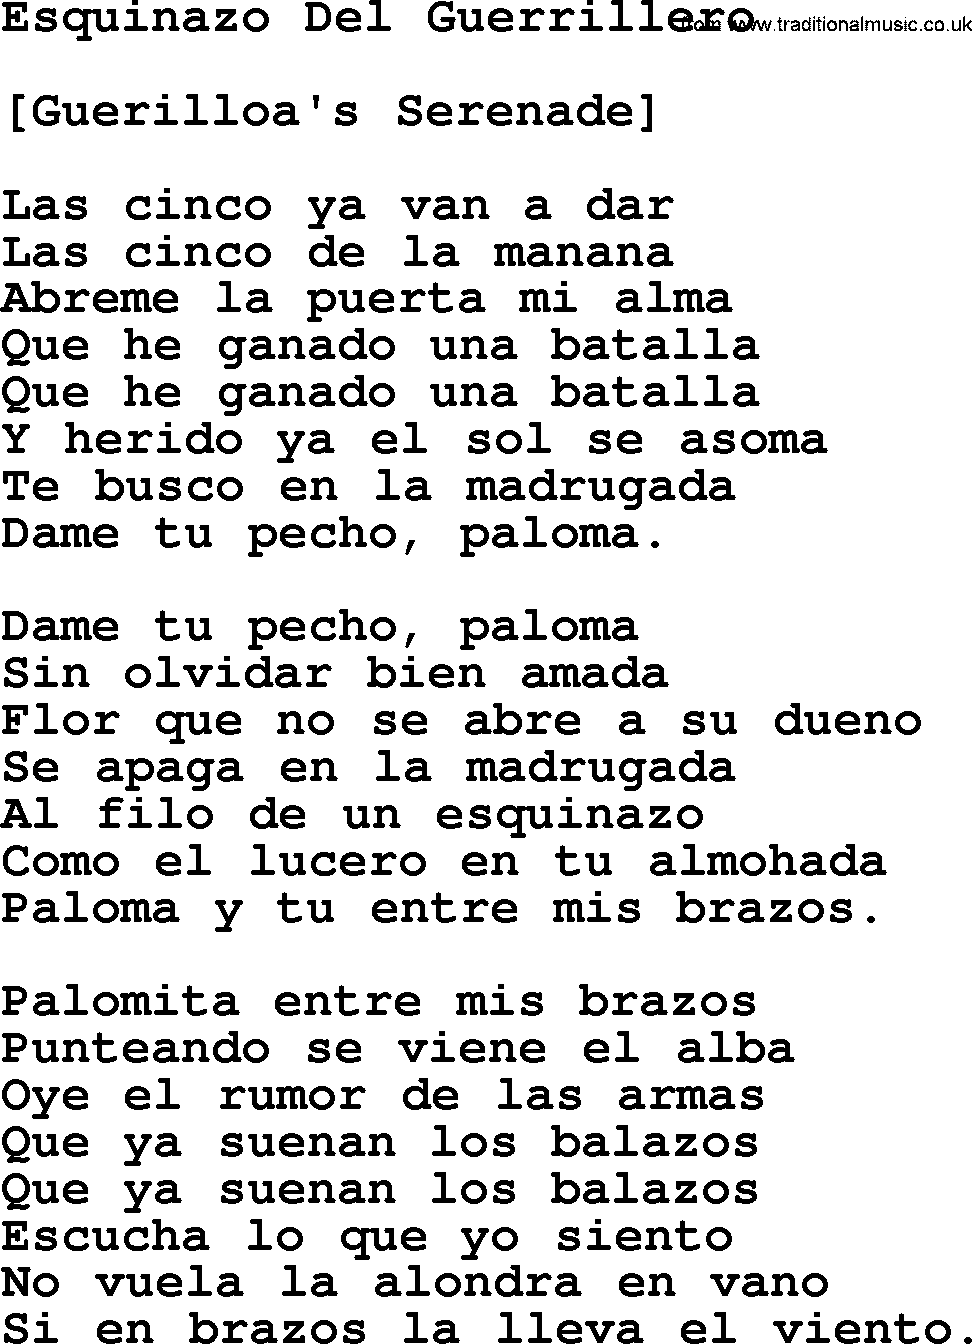 Joan Baez song Esquinazo Del Guerrillero, lyrics